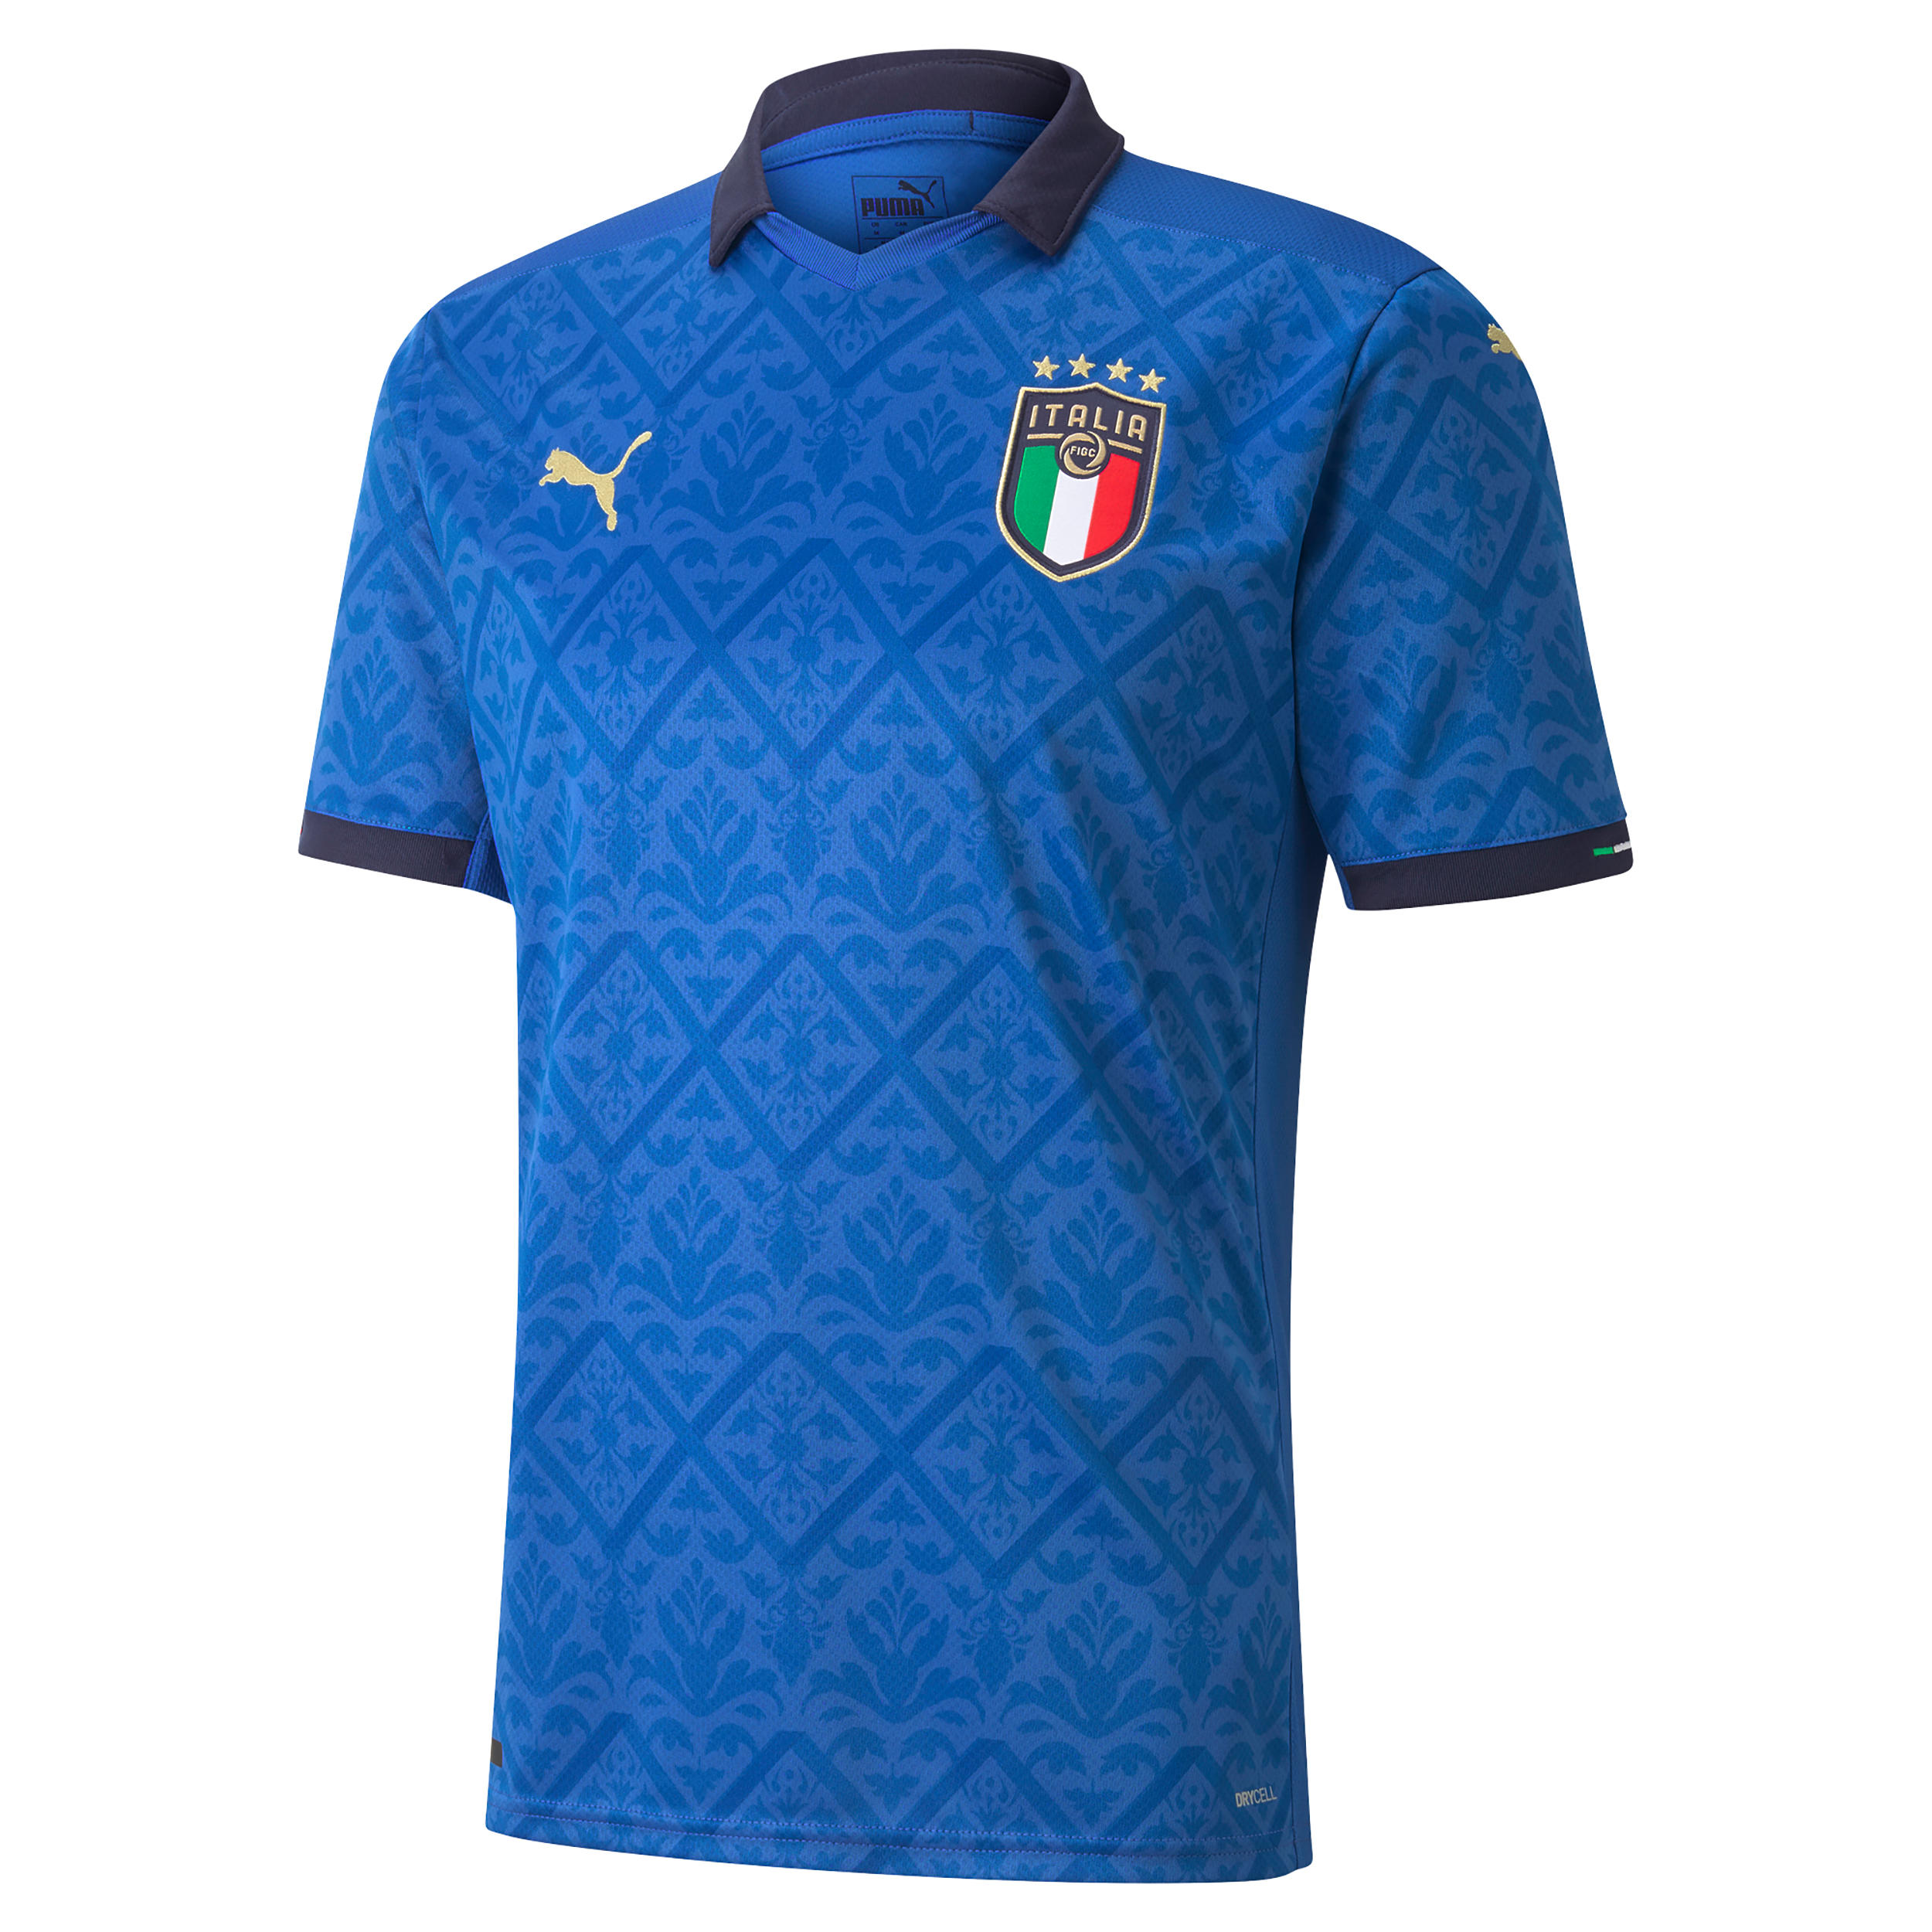 Tricou Fotbal Italia Adulți imagine produs